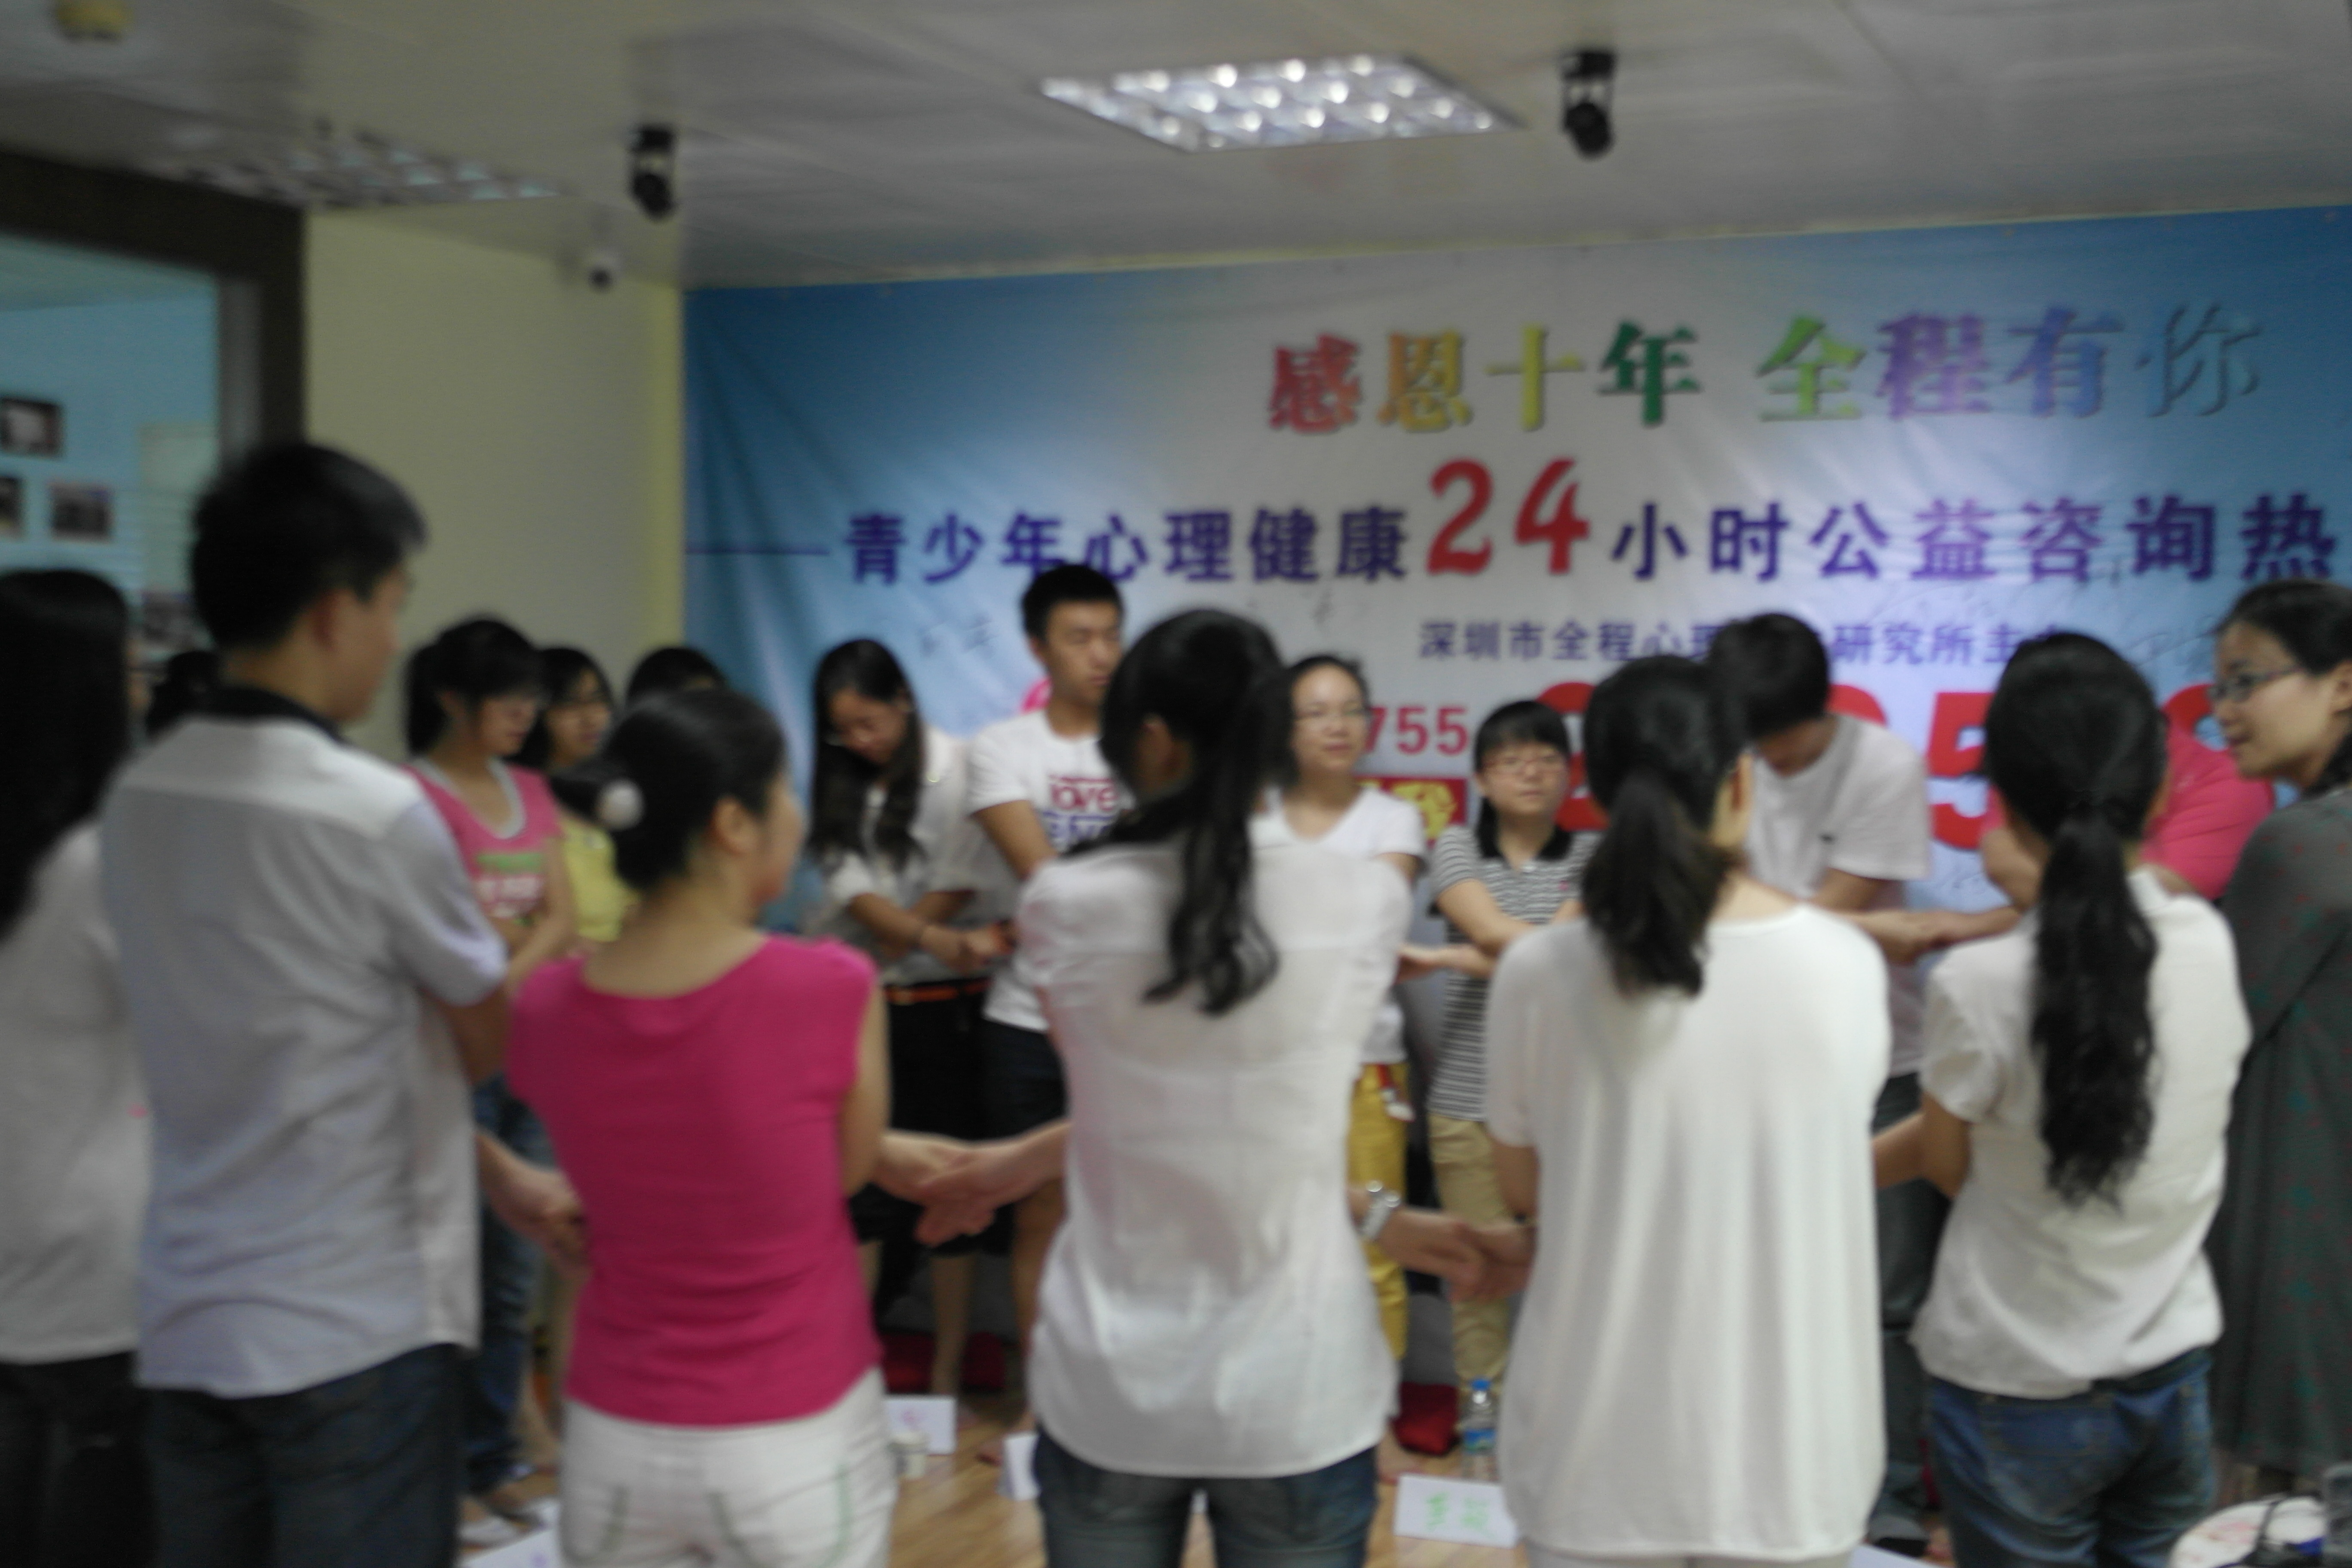 深圳市全程心理研究所联合社工组织开展《意象对话》专题体验沙龙(一)